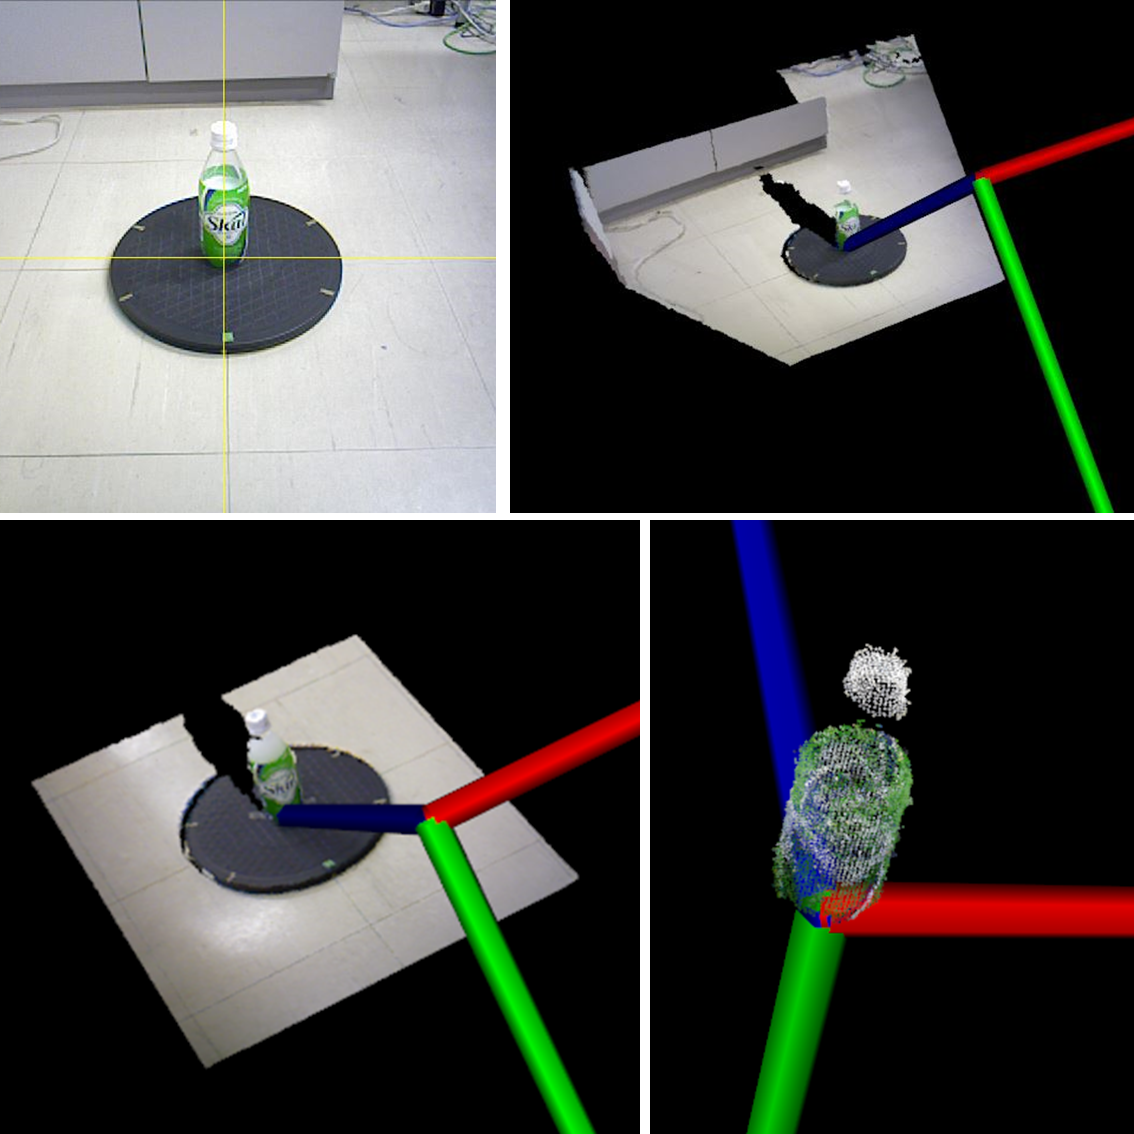 Acquisition of 3D object shape using RGB-D sensor